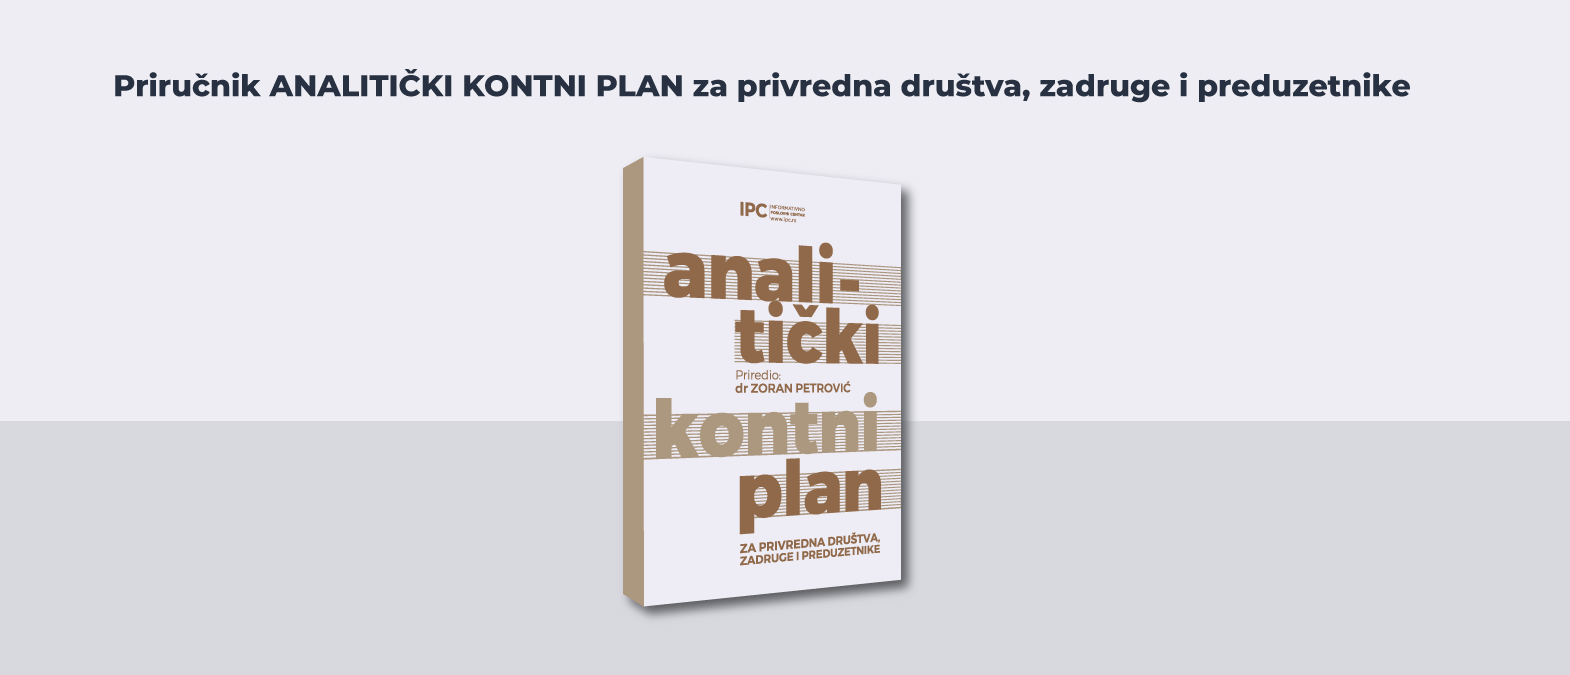 IPC priručnik - analitički kontni plan